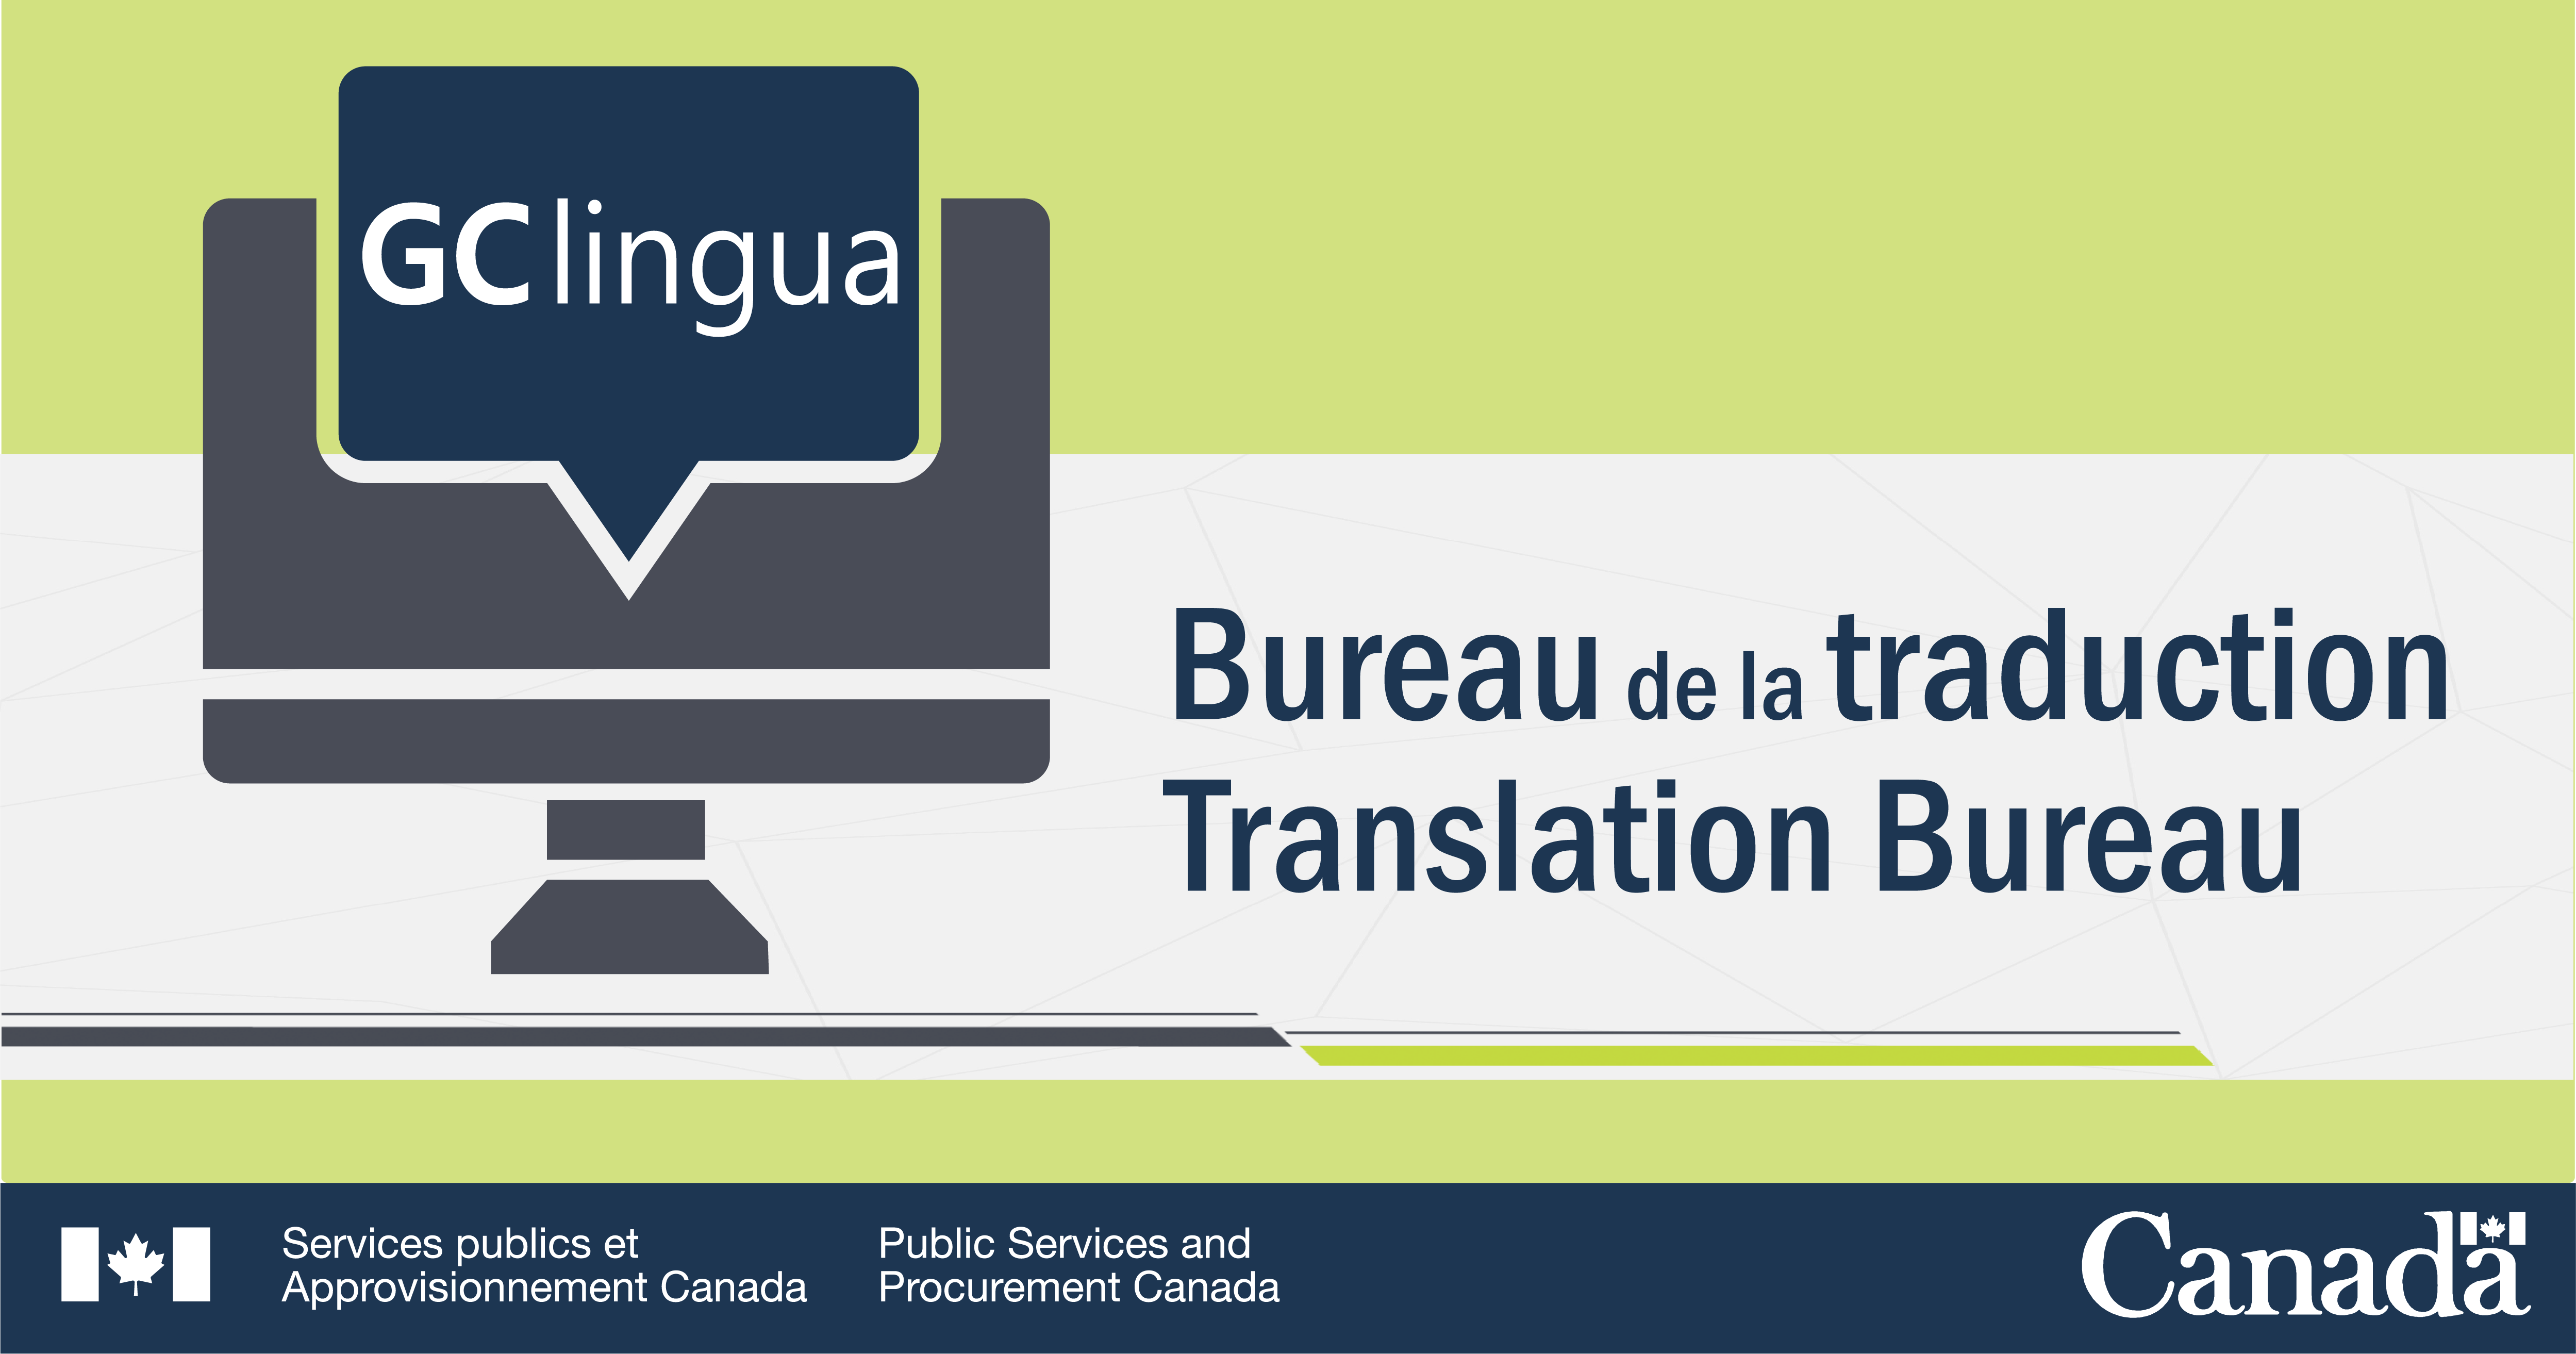 Description de l'image : En arrière-plan, il y a un écran d'ordinateur ayant pour titre « GClingua ». À droite de l'image, on peut lire « Bureau de la traduction / Translation Bureau ». Au bas de l'image, il y a la signature du Ministère et le symbole Canada.